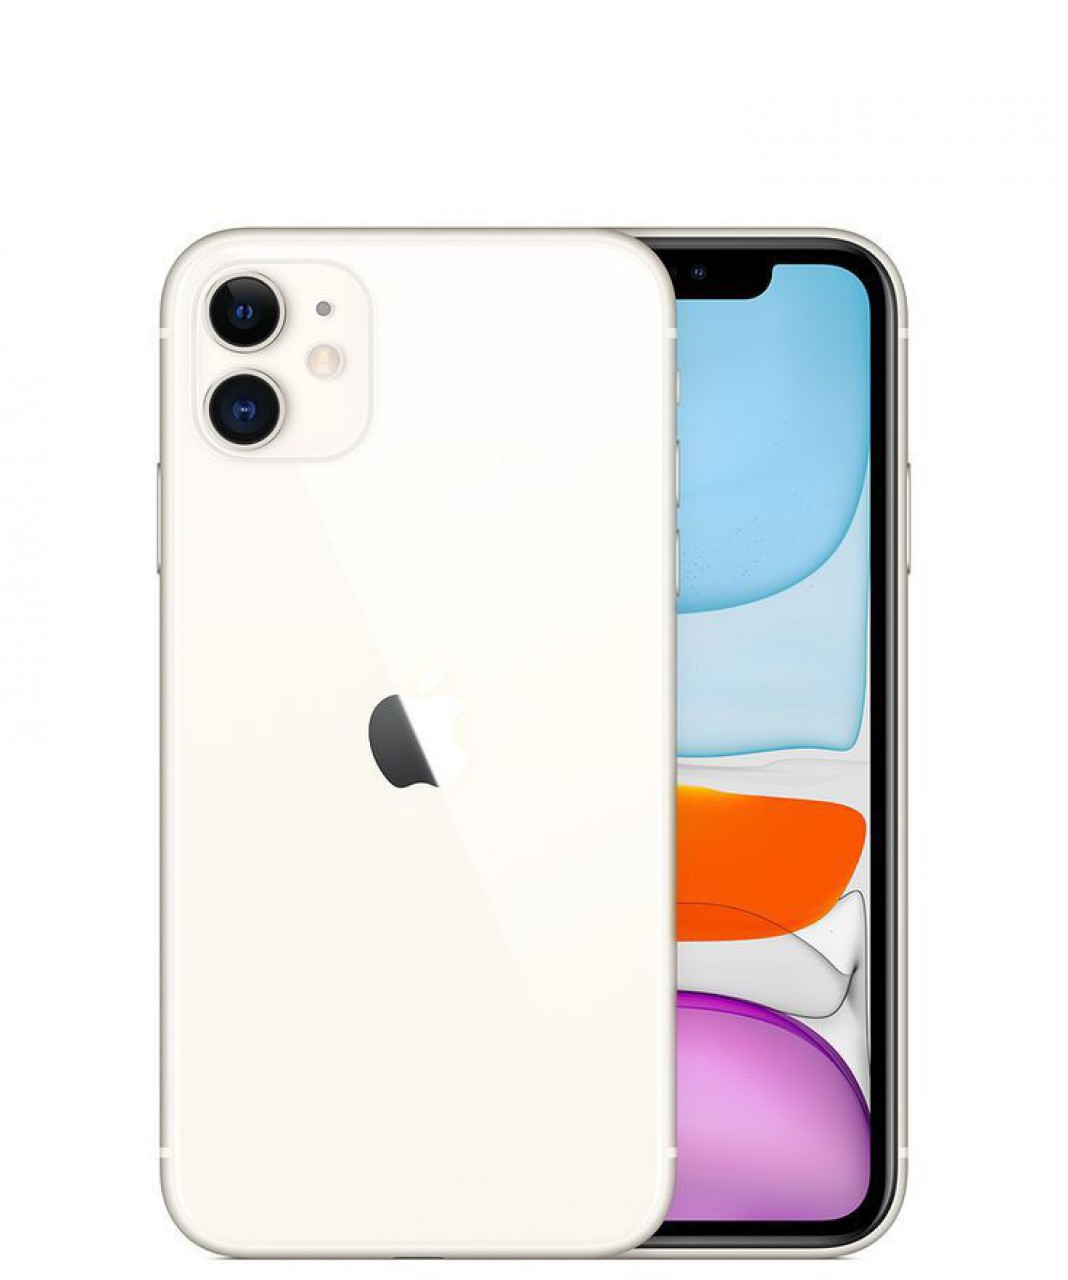 Apple iPhone 11, Telemóveis, Bissau